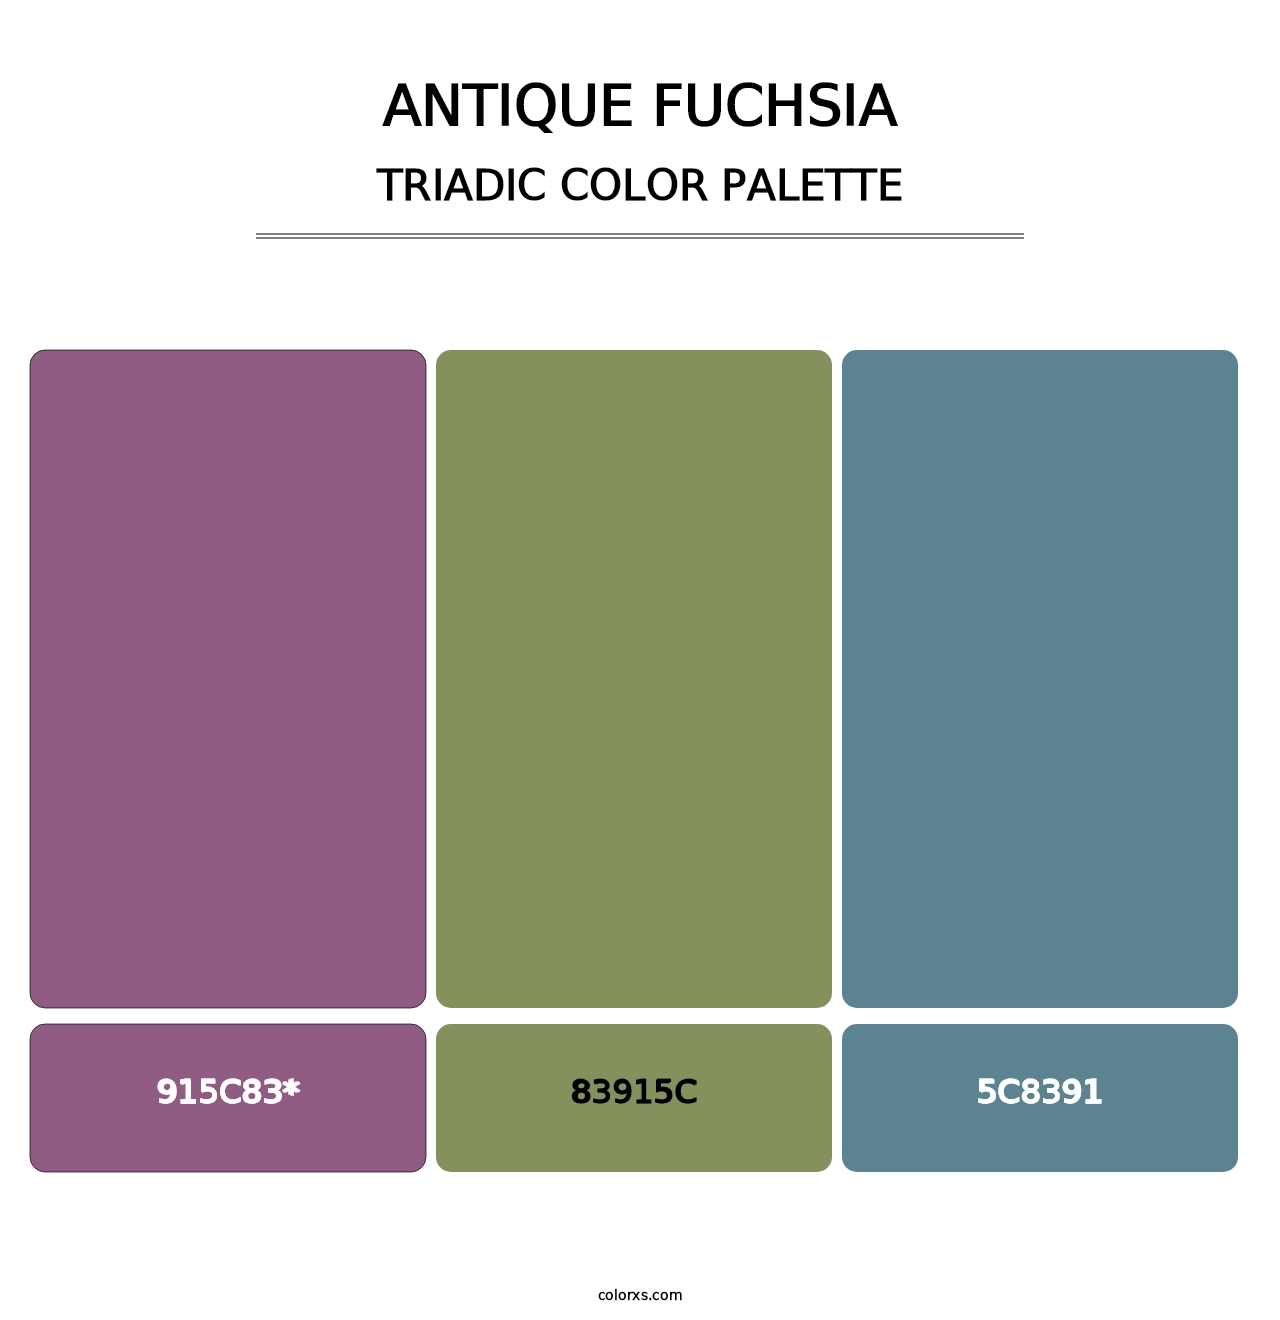 Antique Fuchsia - Triadic Color Palette